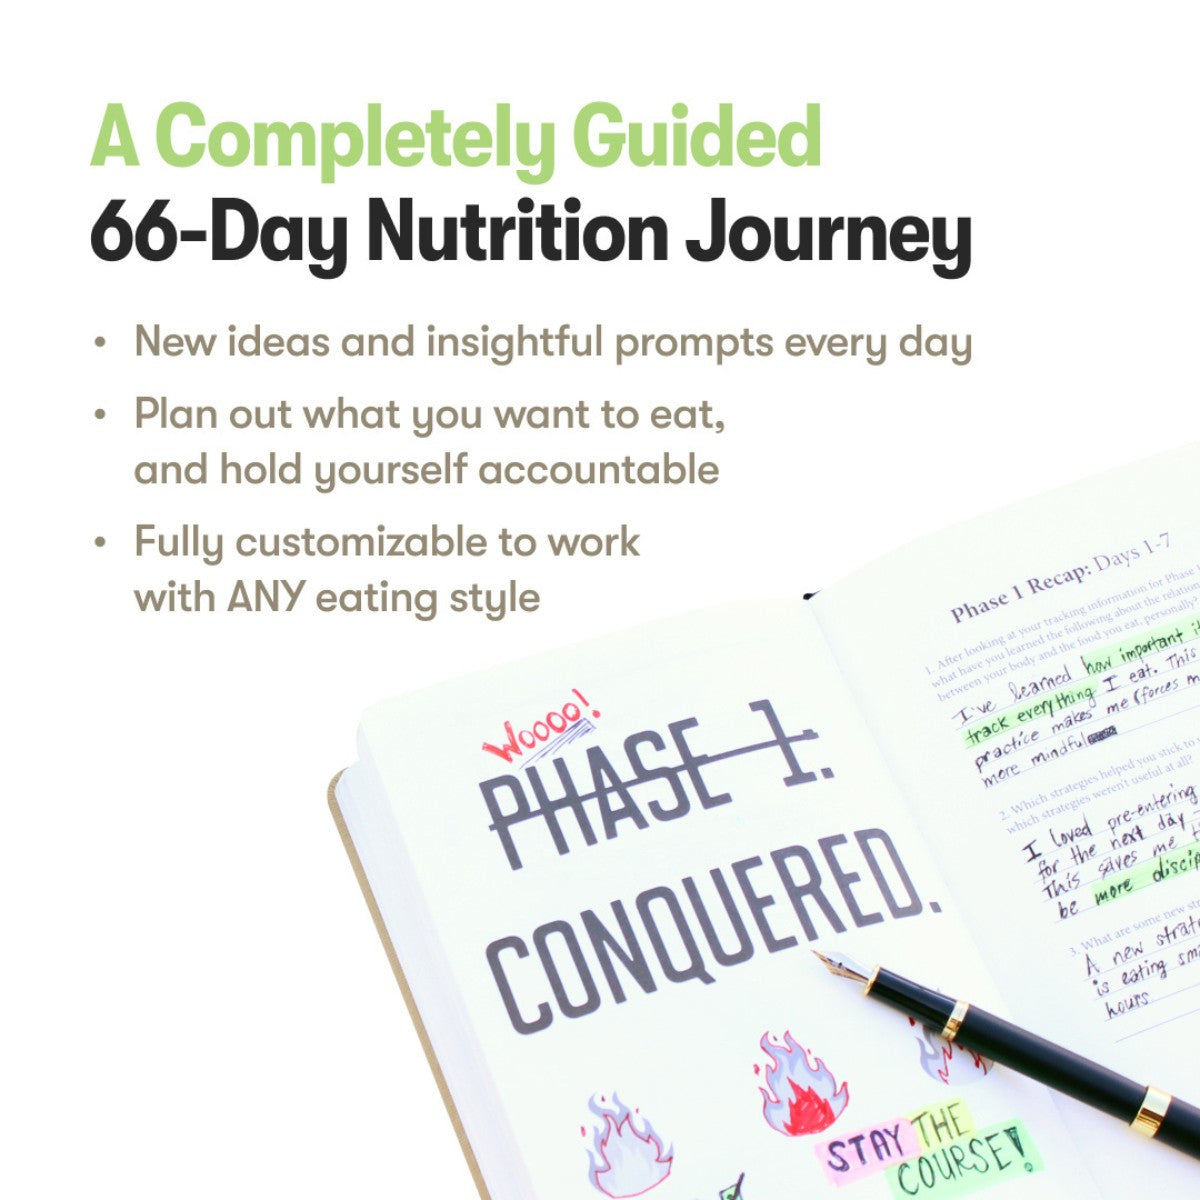 Nutrition Sidekick Journal